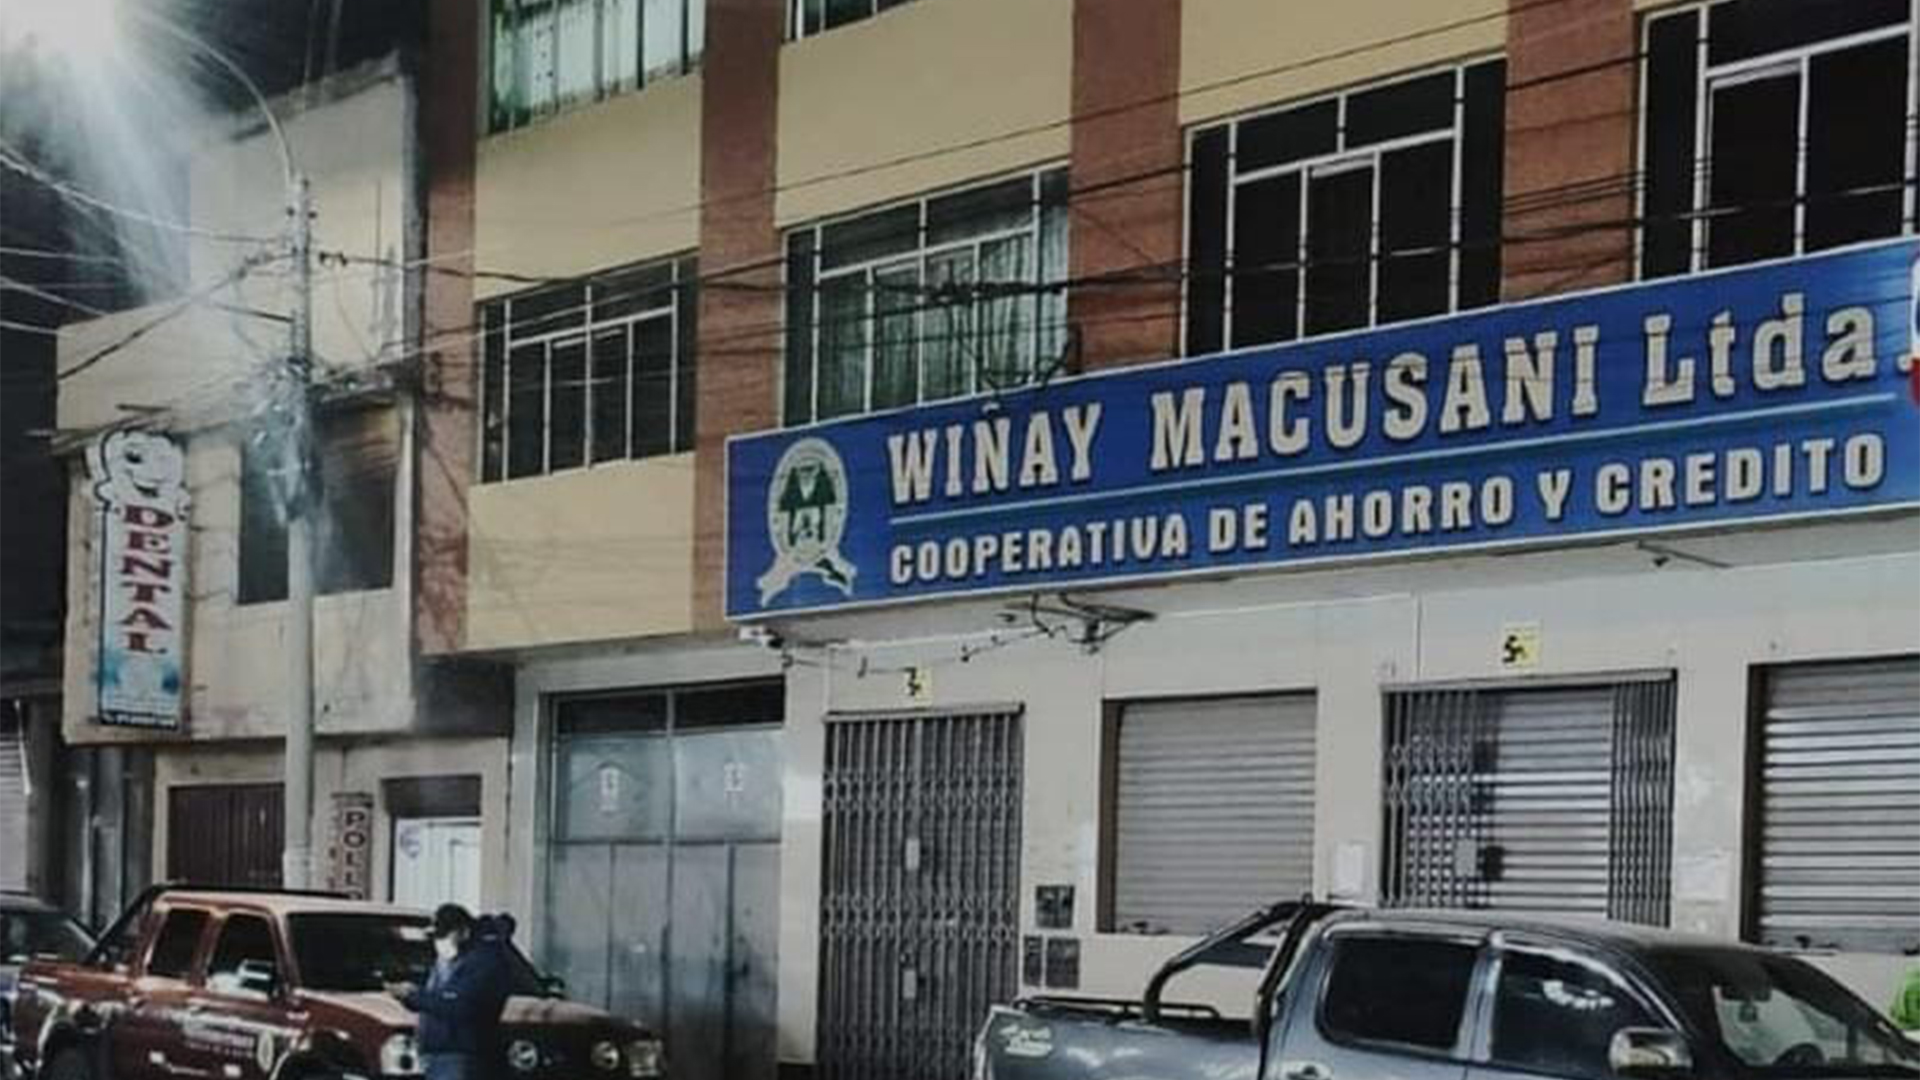 Cooperativa de Ahorro y Crédito Wiñay Macusani